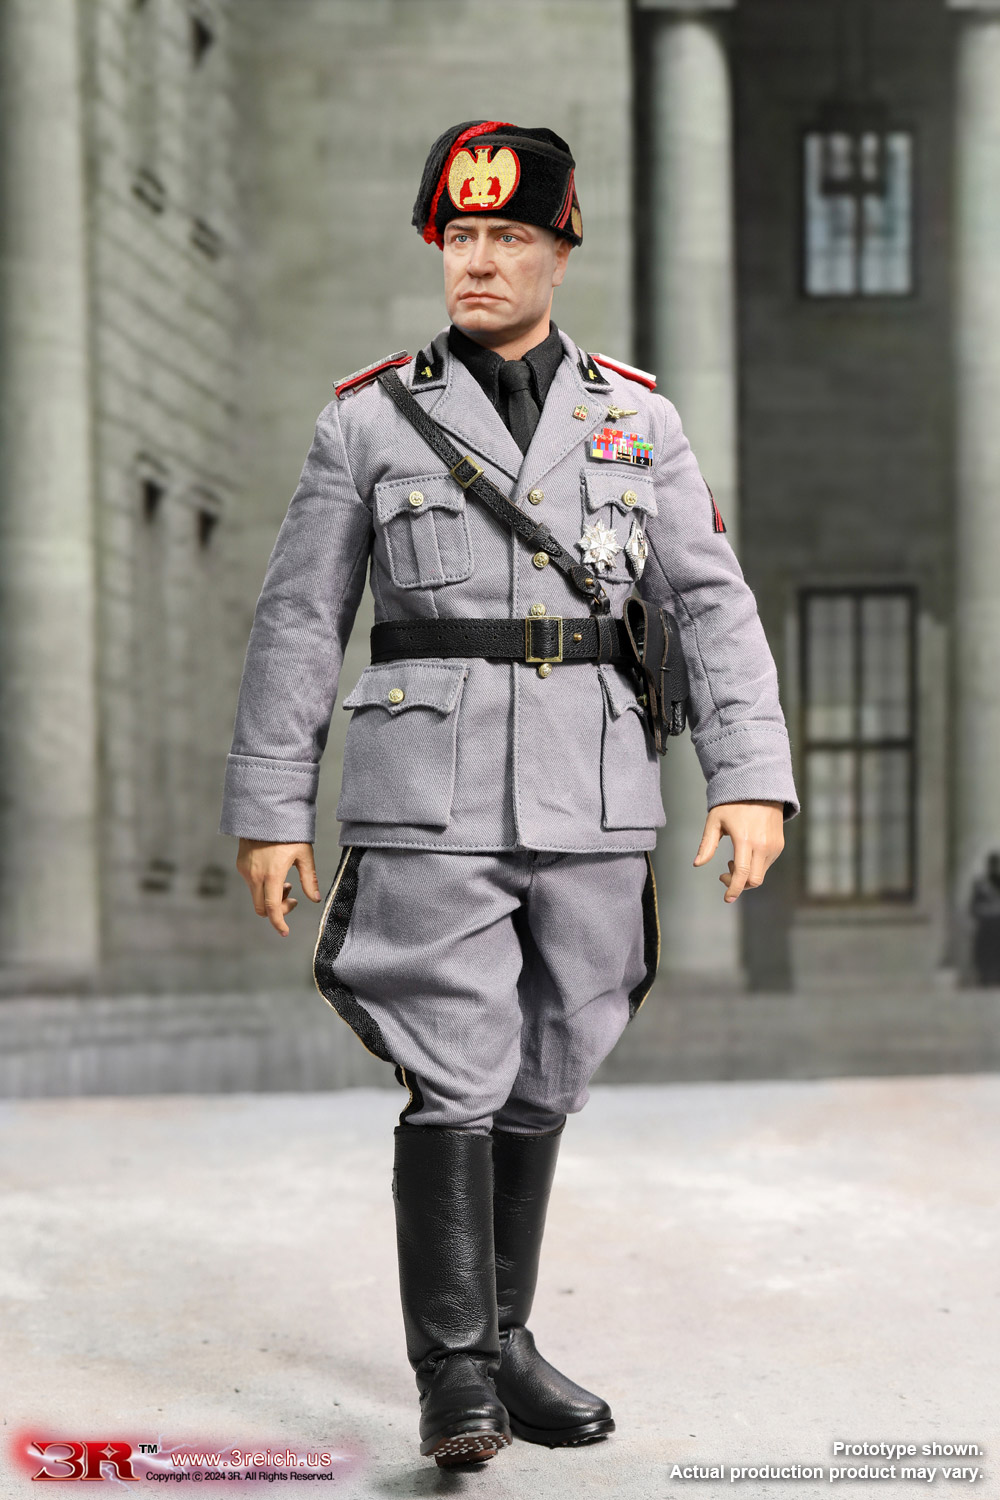 Benito Mussolini - Il Duce of PNF